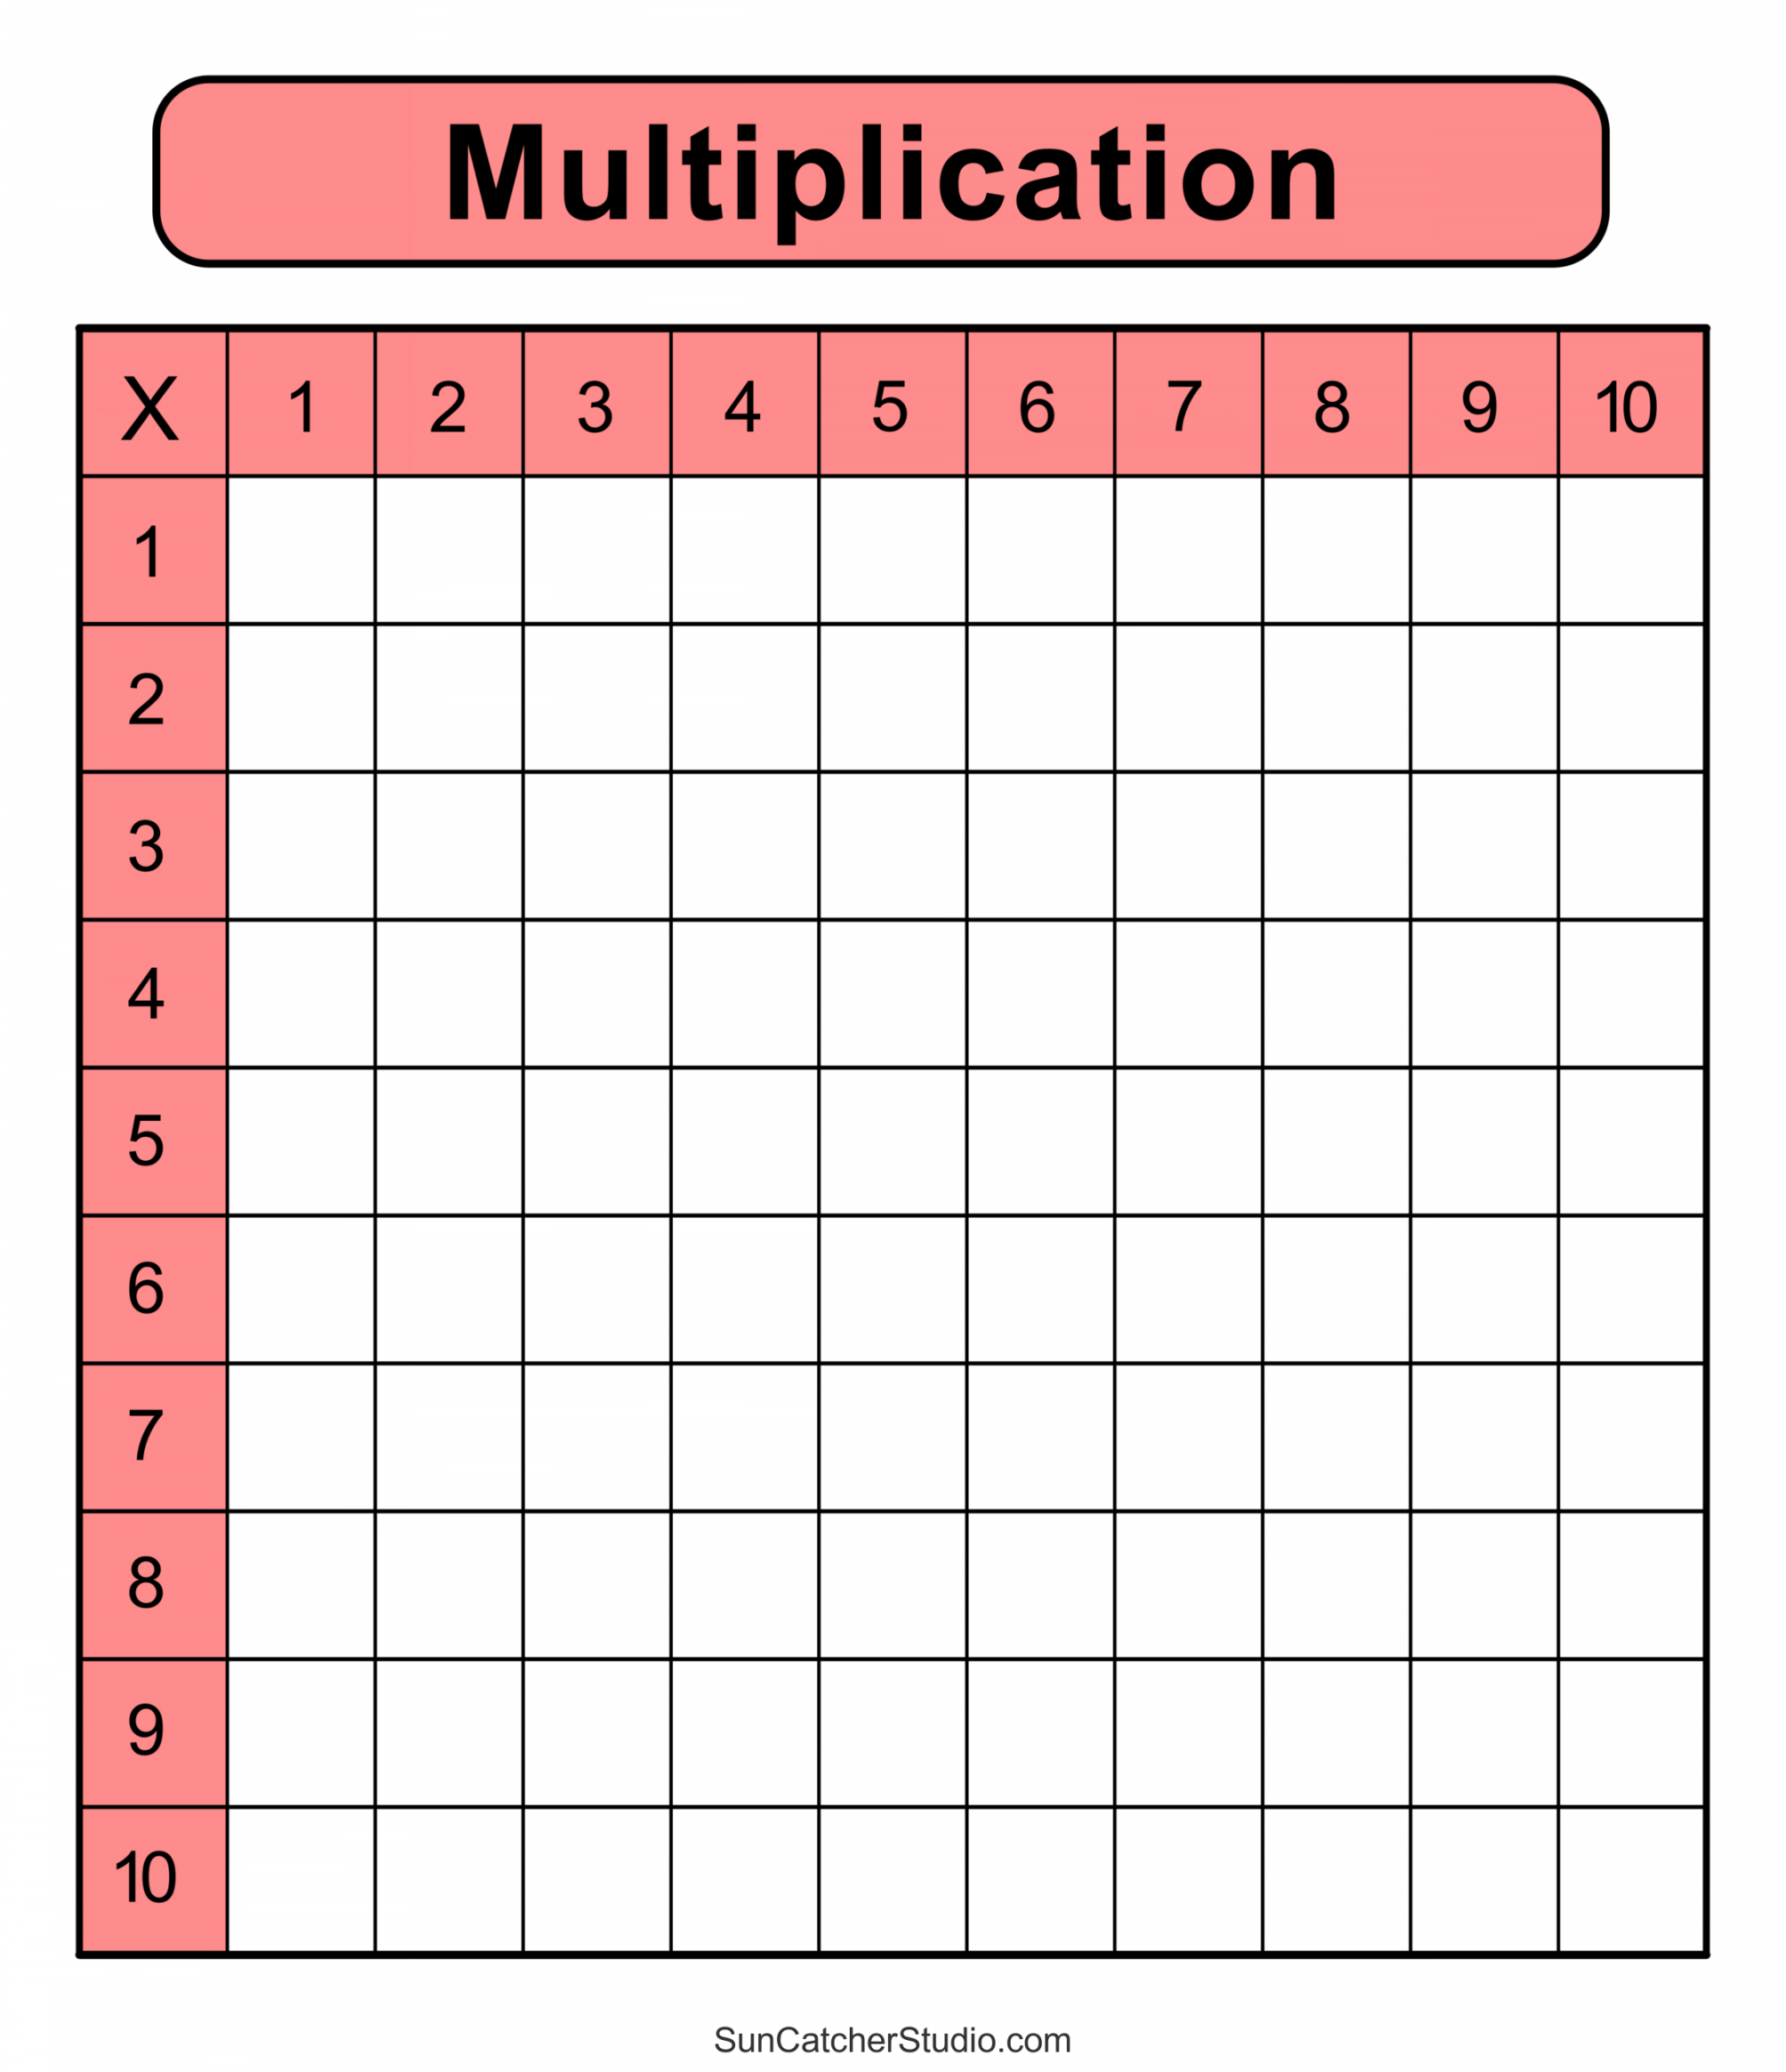 Multiplication Charts (PDF): Free Printable Times Tables – DIY  - FREE Printables - Multiplication Table Blank Printable